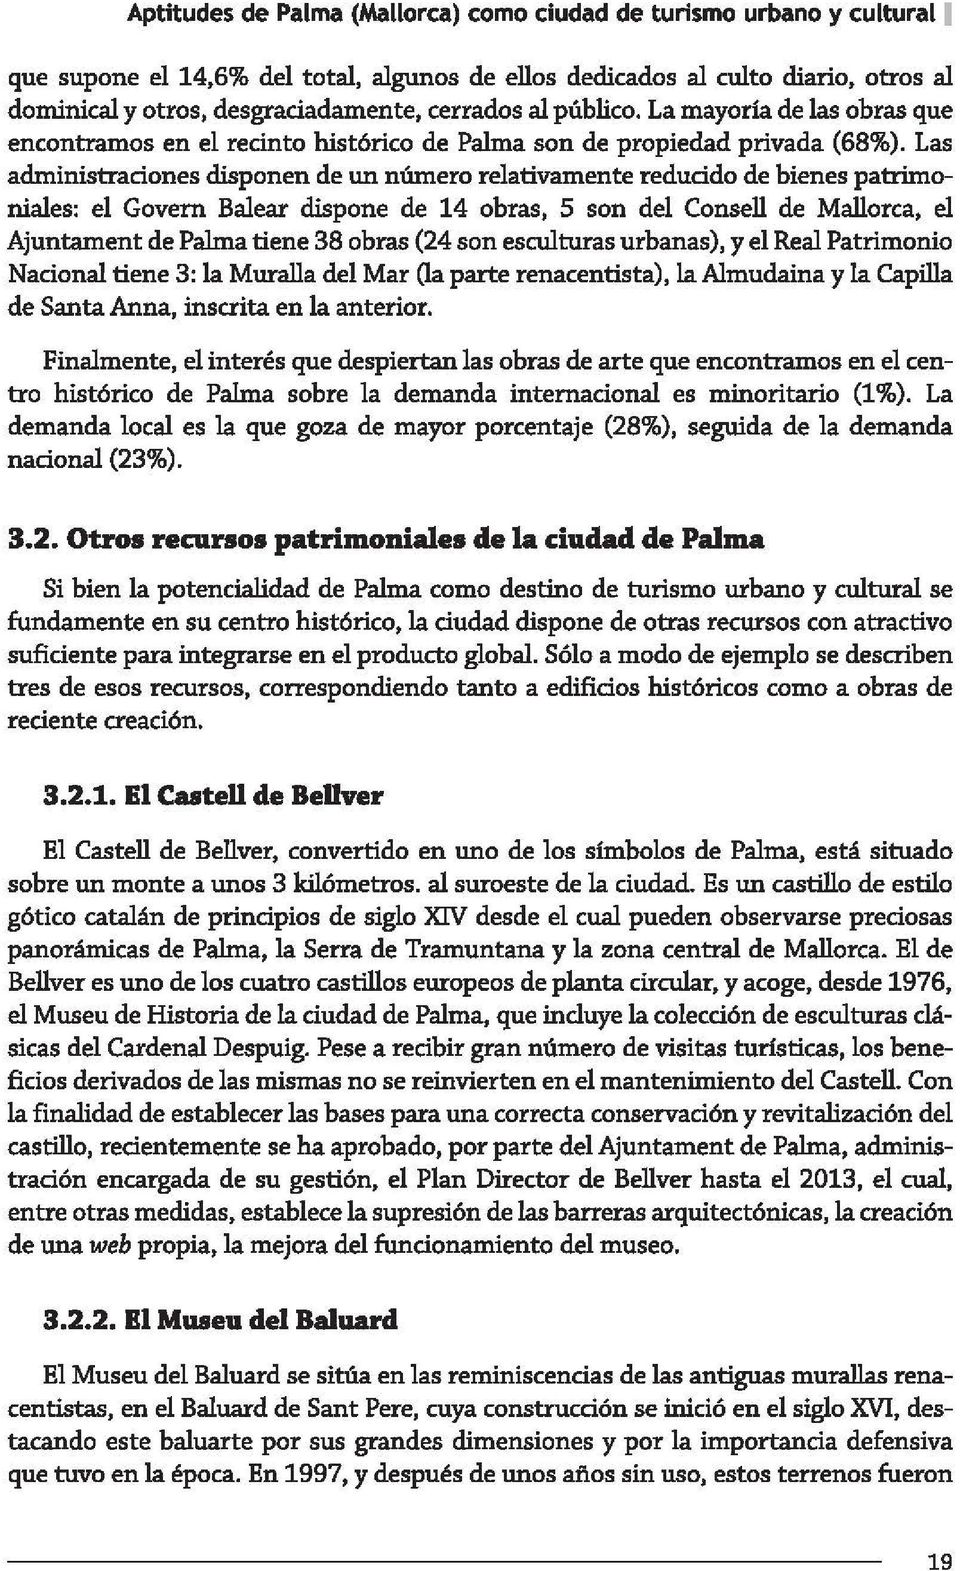 Las administraciones disponen de un número relativamente reducido de bienes patrimoniales: el Govem Balear dispone de 14 obras, 5 son del Consell de Mallorca, el Ajuntament de Palma tiene 38 obras